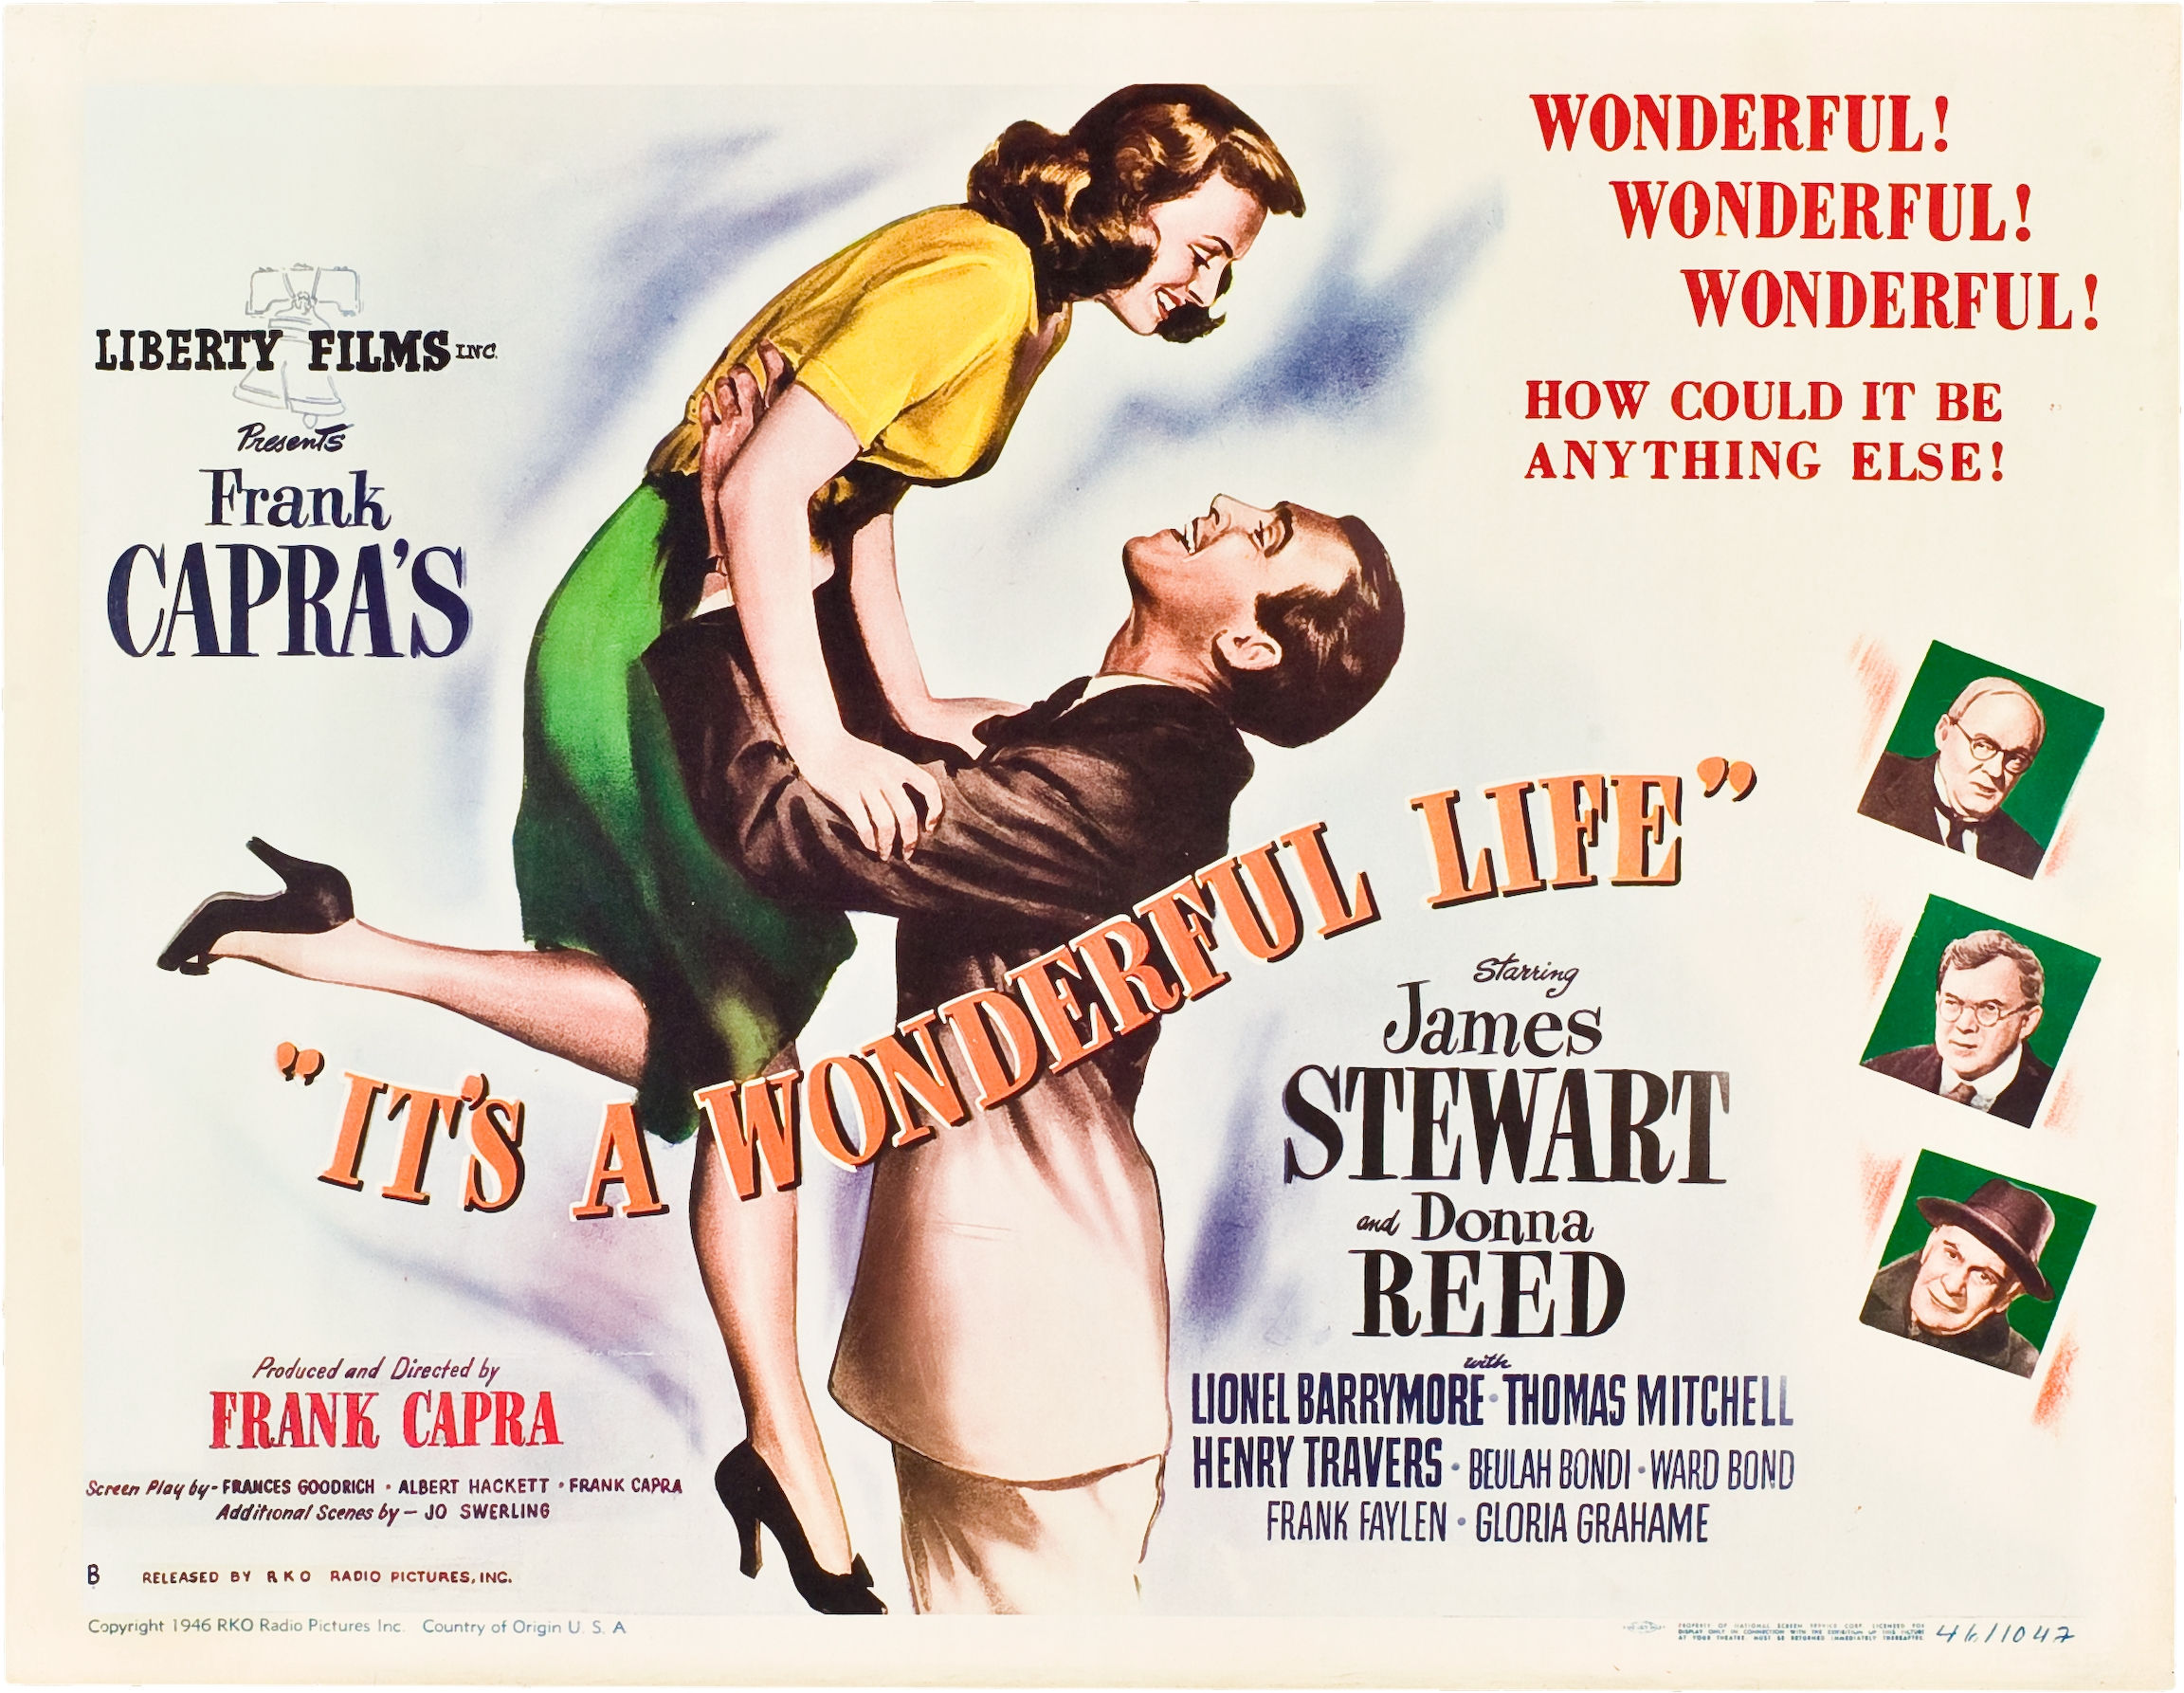 Wonderful life. «Это замечательная жизнь» (1946) Постер. Фрэнк Капра эта прекрасная жизнь Постер. Плакат жизнь прекрасна. Эта замечательная жизнь 1946 Постер.